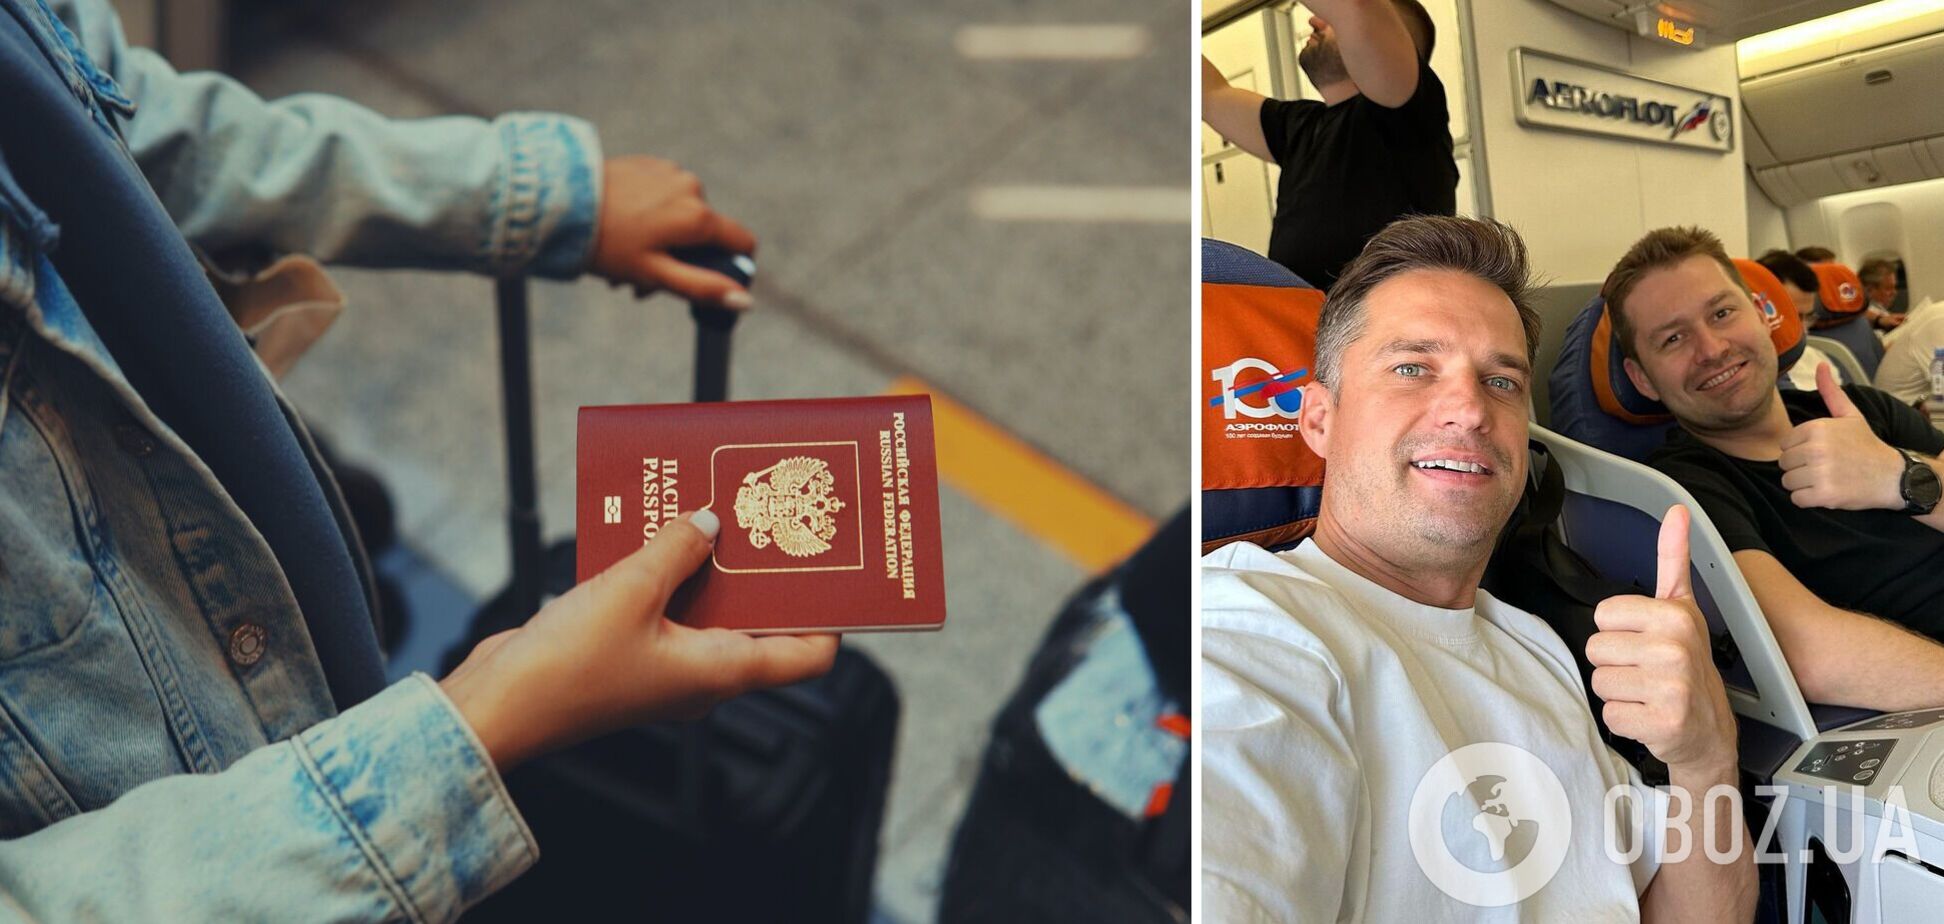 Говорят, что из Украины: российские туристы придумали 'лайфхак', чтобы их не трогали из-за национальности